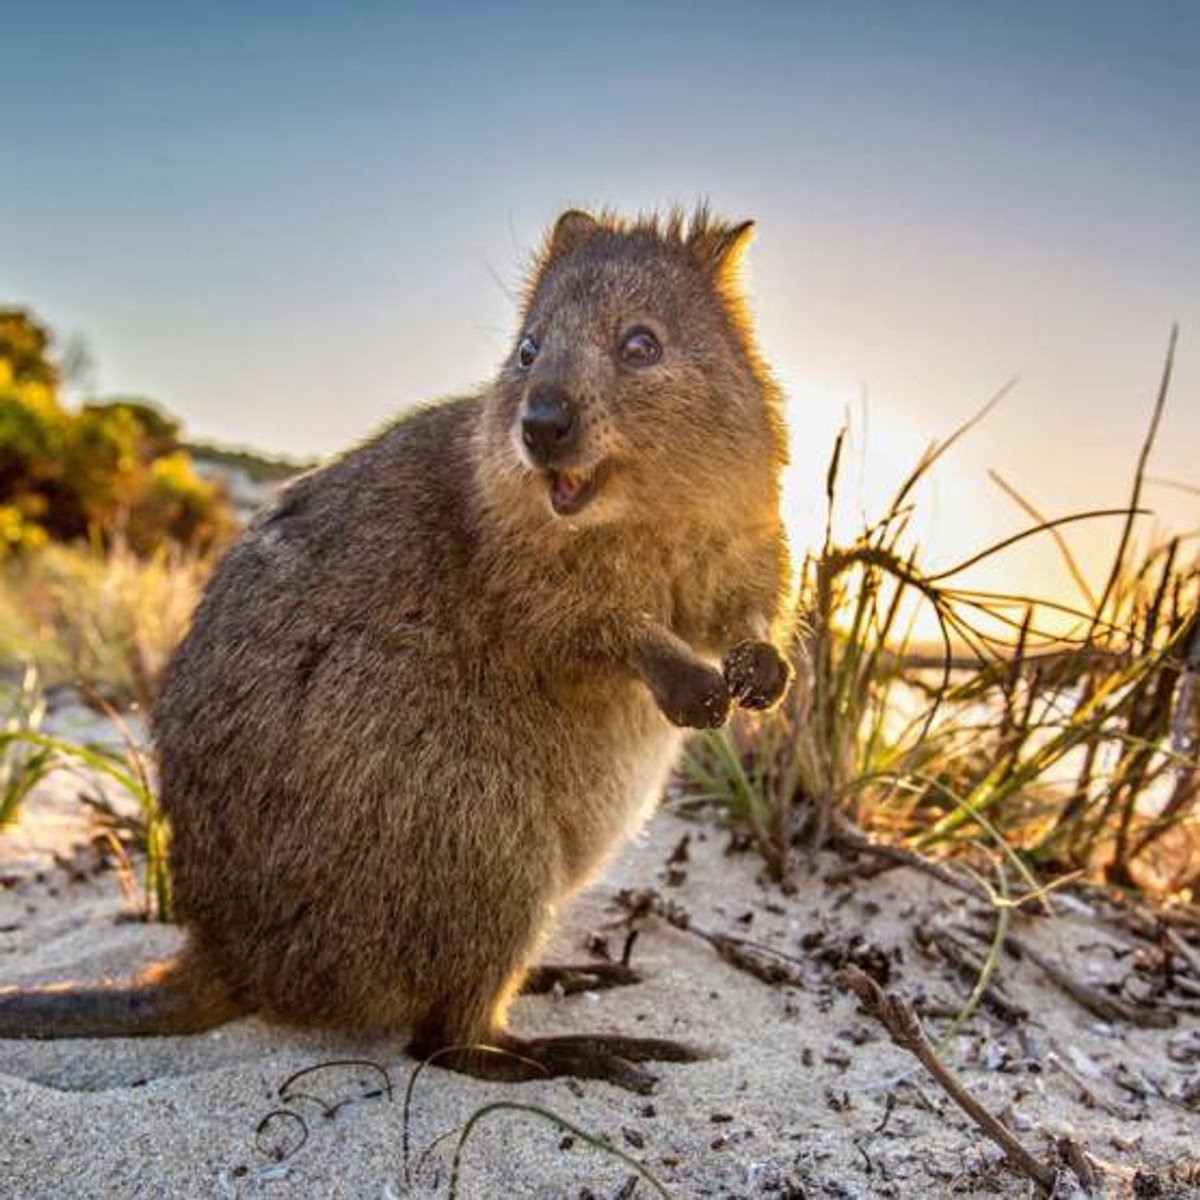 Австралийское животное меняющее внешний вид. Кенгуру Квокка. Австралия Квокка. Квокка (короткохвостый кенгуру). Австралийская кенгуру Квокка.